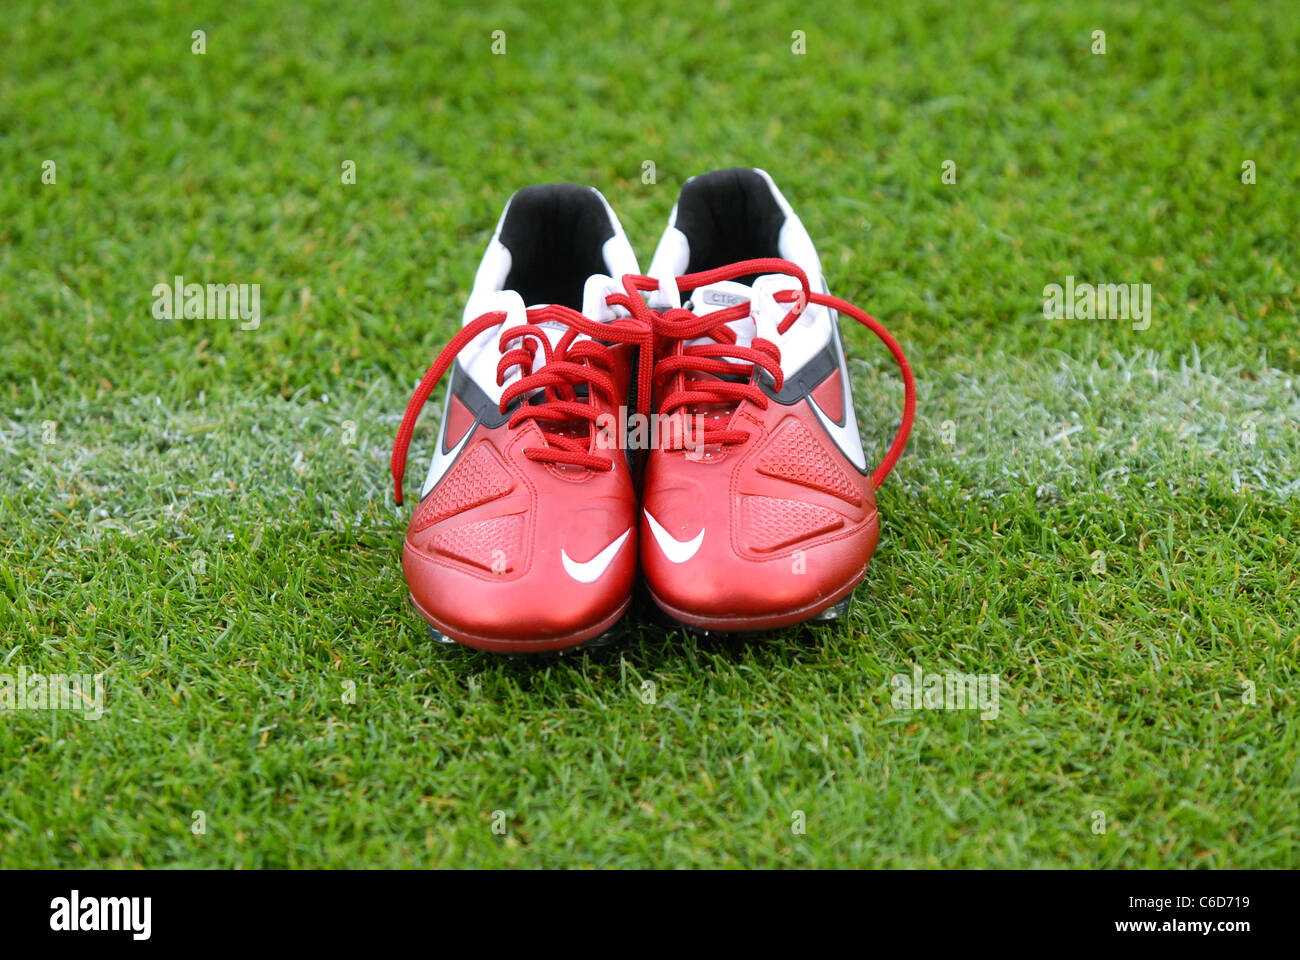 Paar rote Nike Fußballschuhe auf die weiße Linie eines Fußballfeldes  Stockfotografie - Alamy